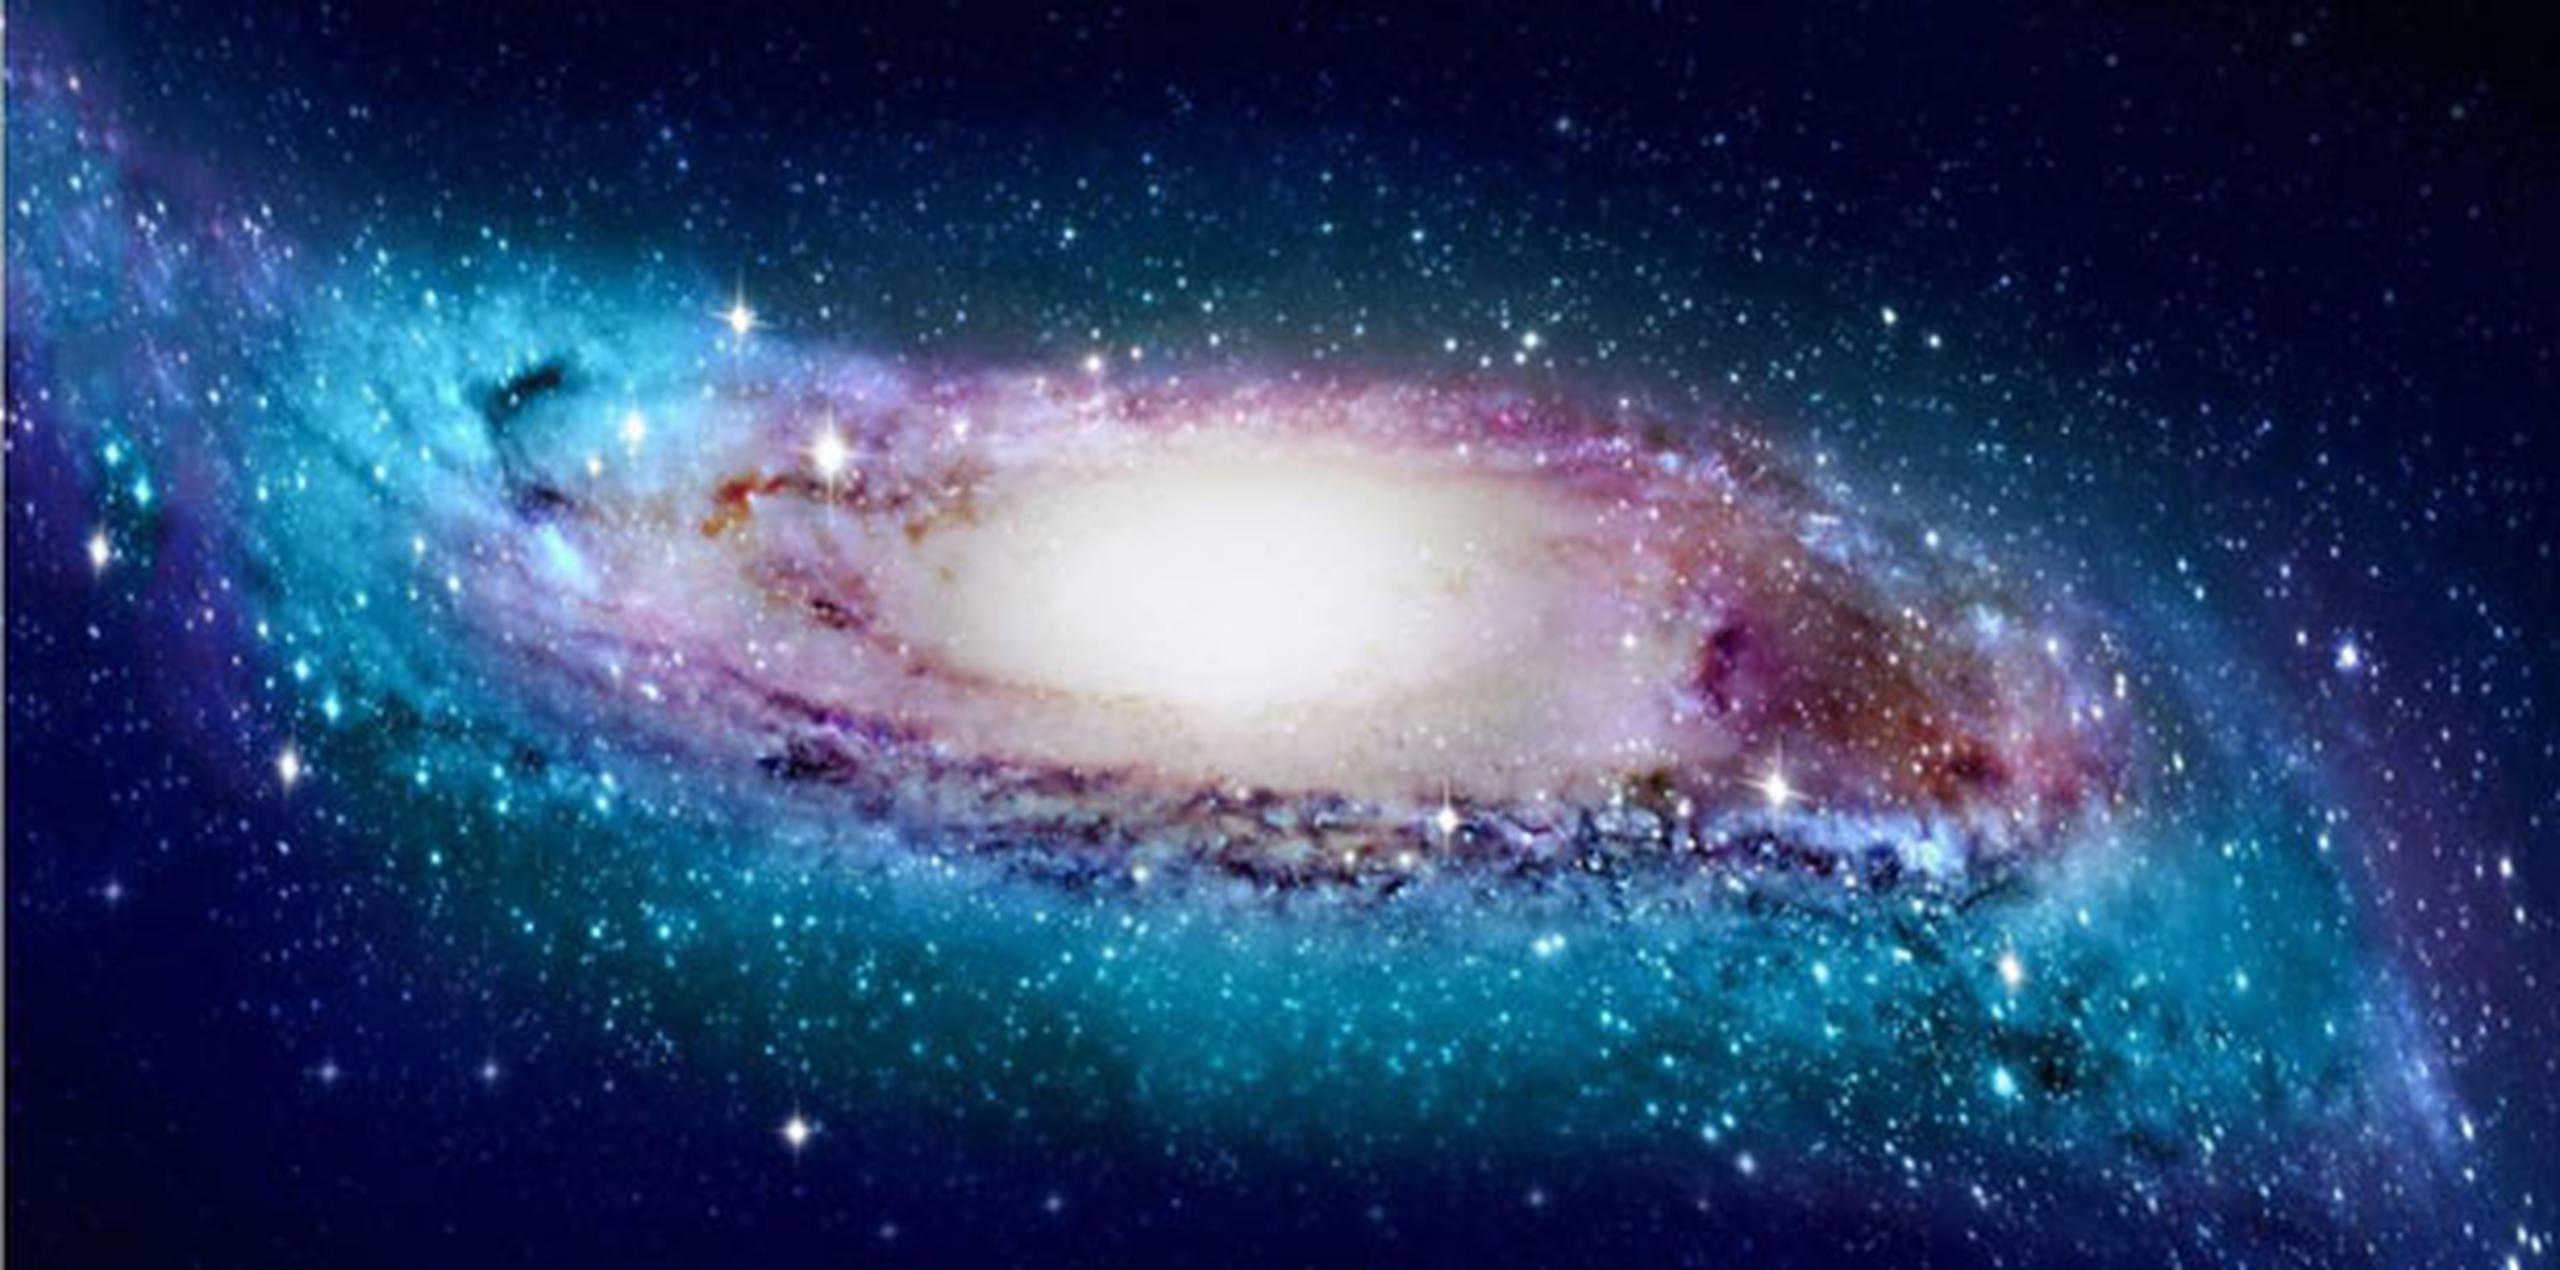 Hay al menos una decena de galaxias de patrón espiral con bordes combados, de manera que en ese sentido nuestra Vía Láctea dista de ser única. (AP)